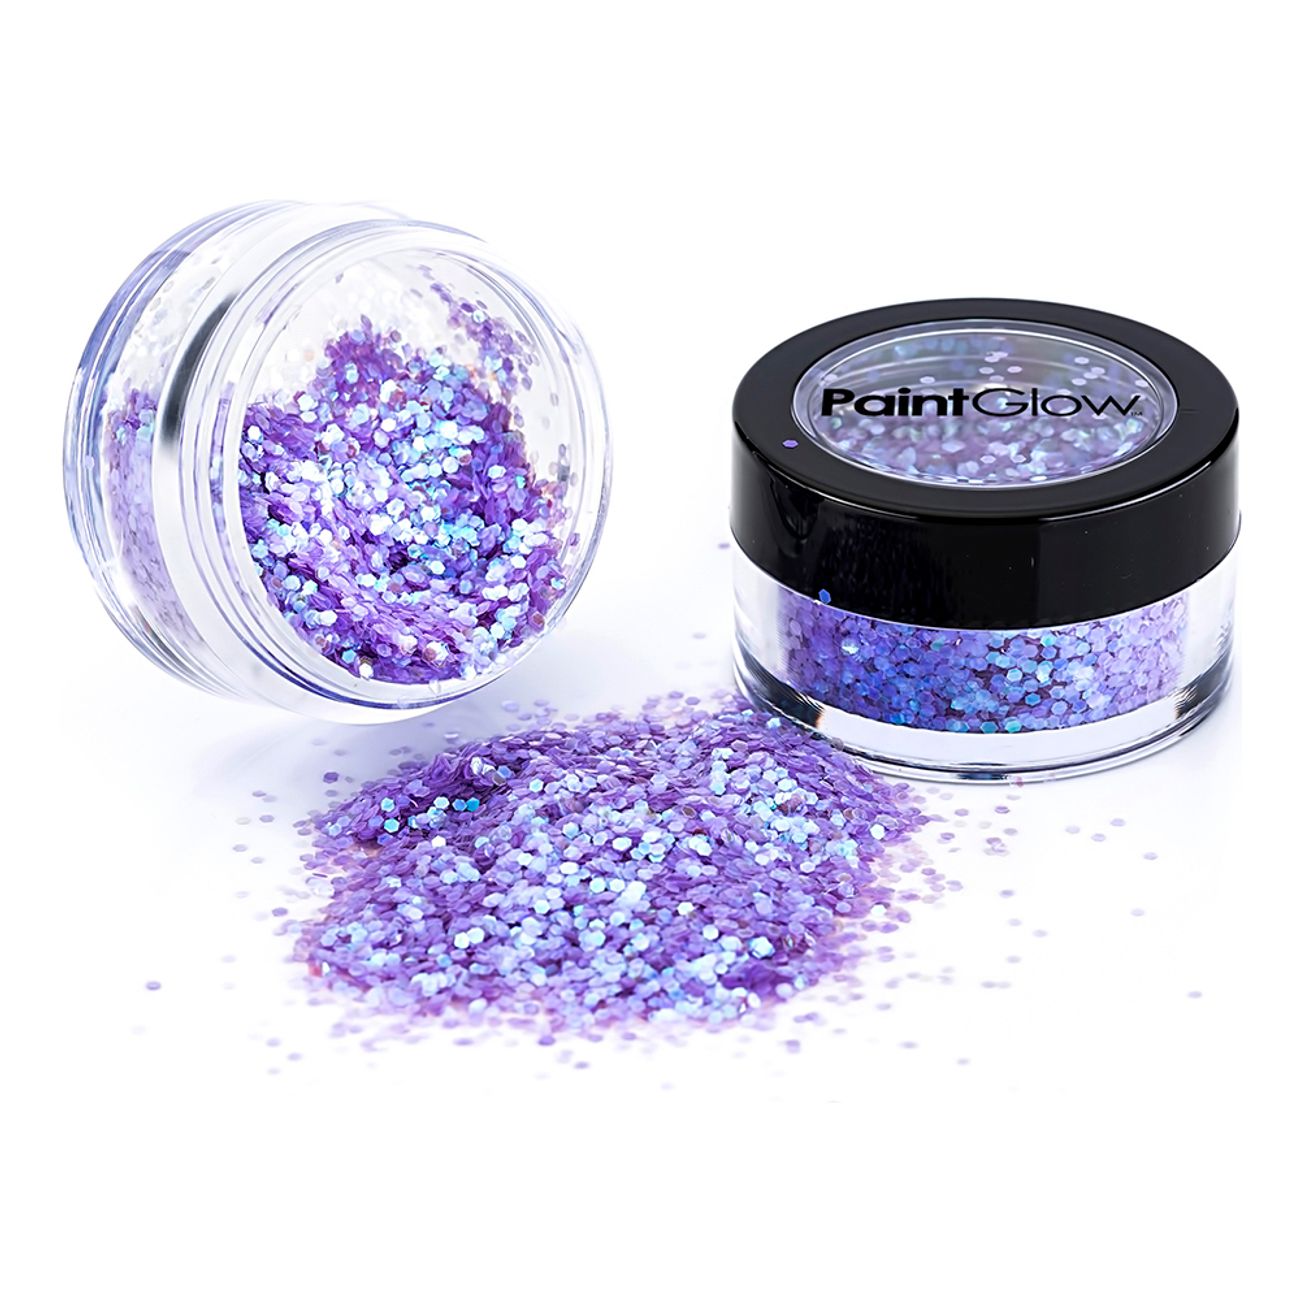 paintglow-mermazing-skimrande-glitter-5